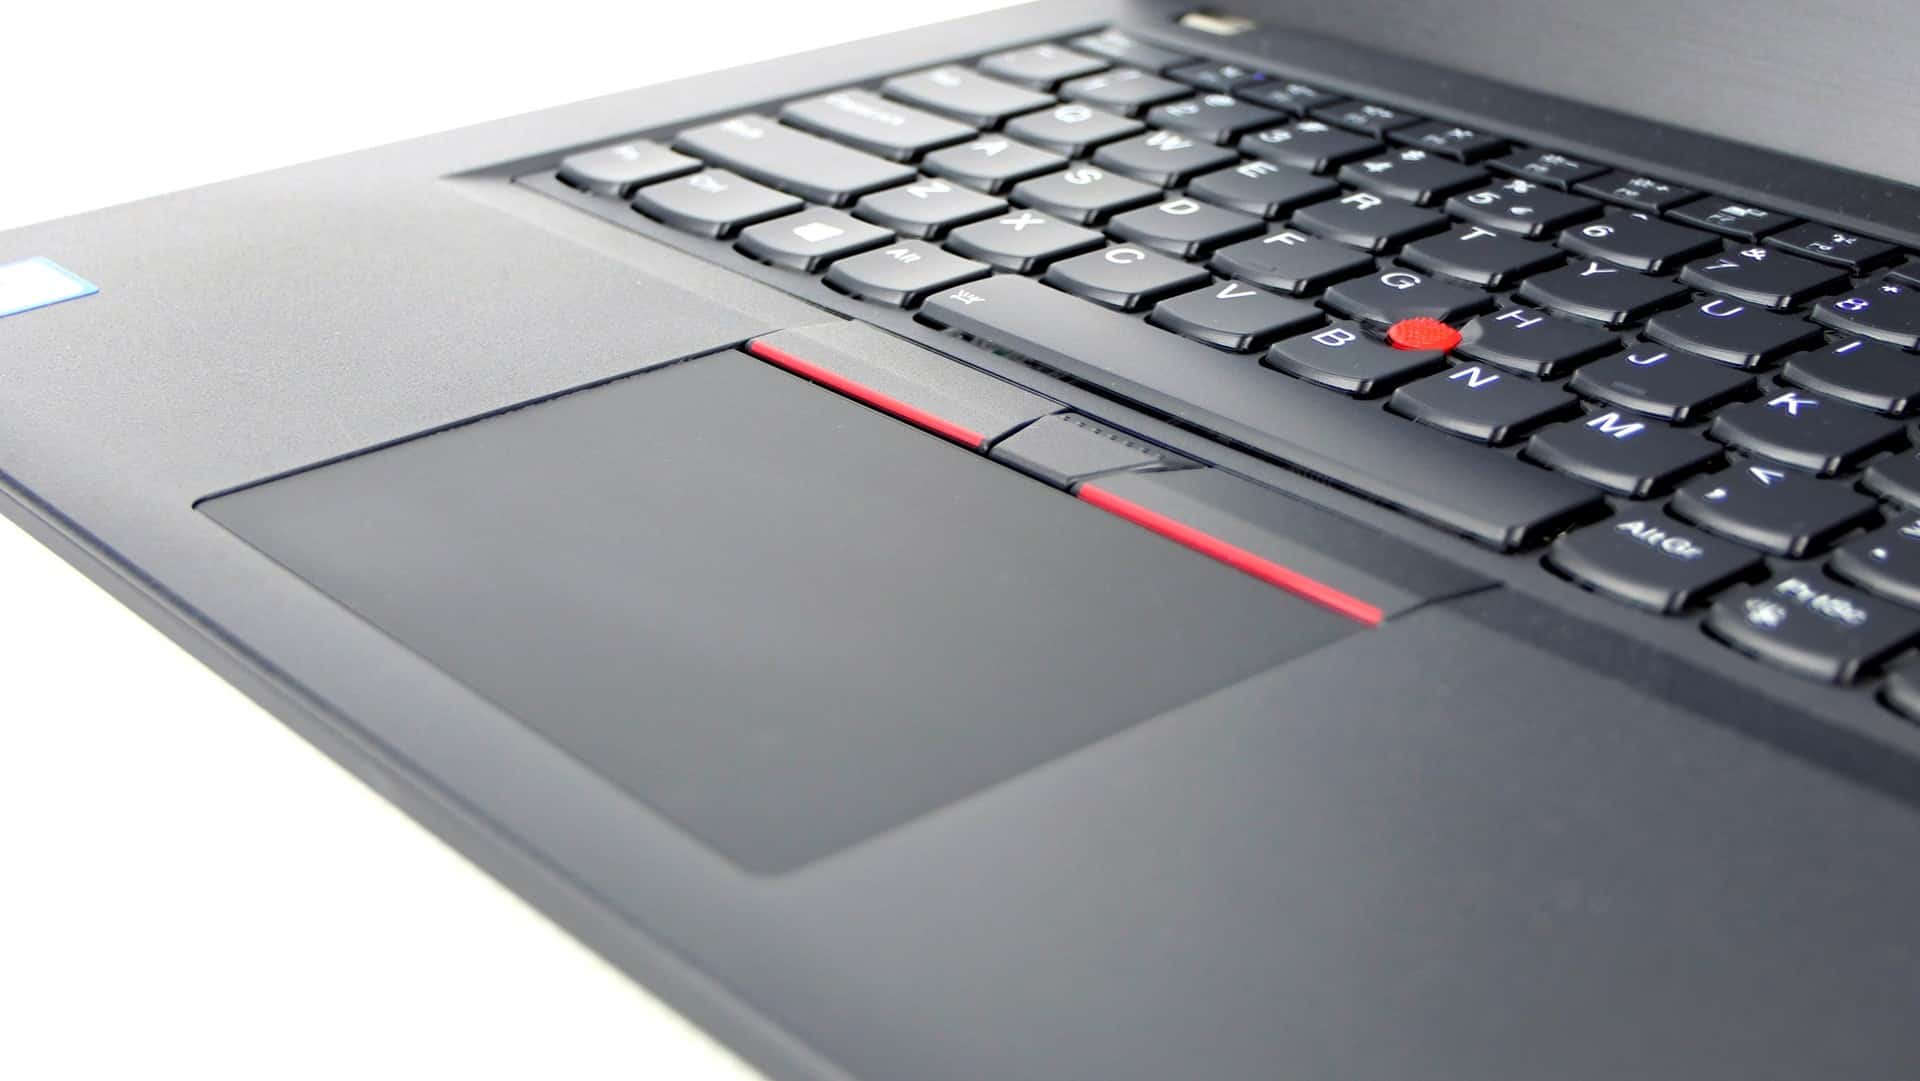 Lenovo ThinkPad T480 - touchpad